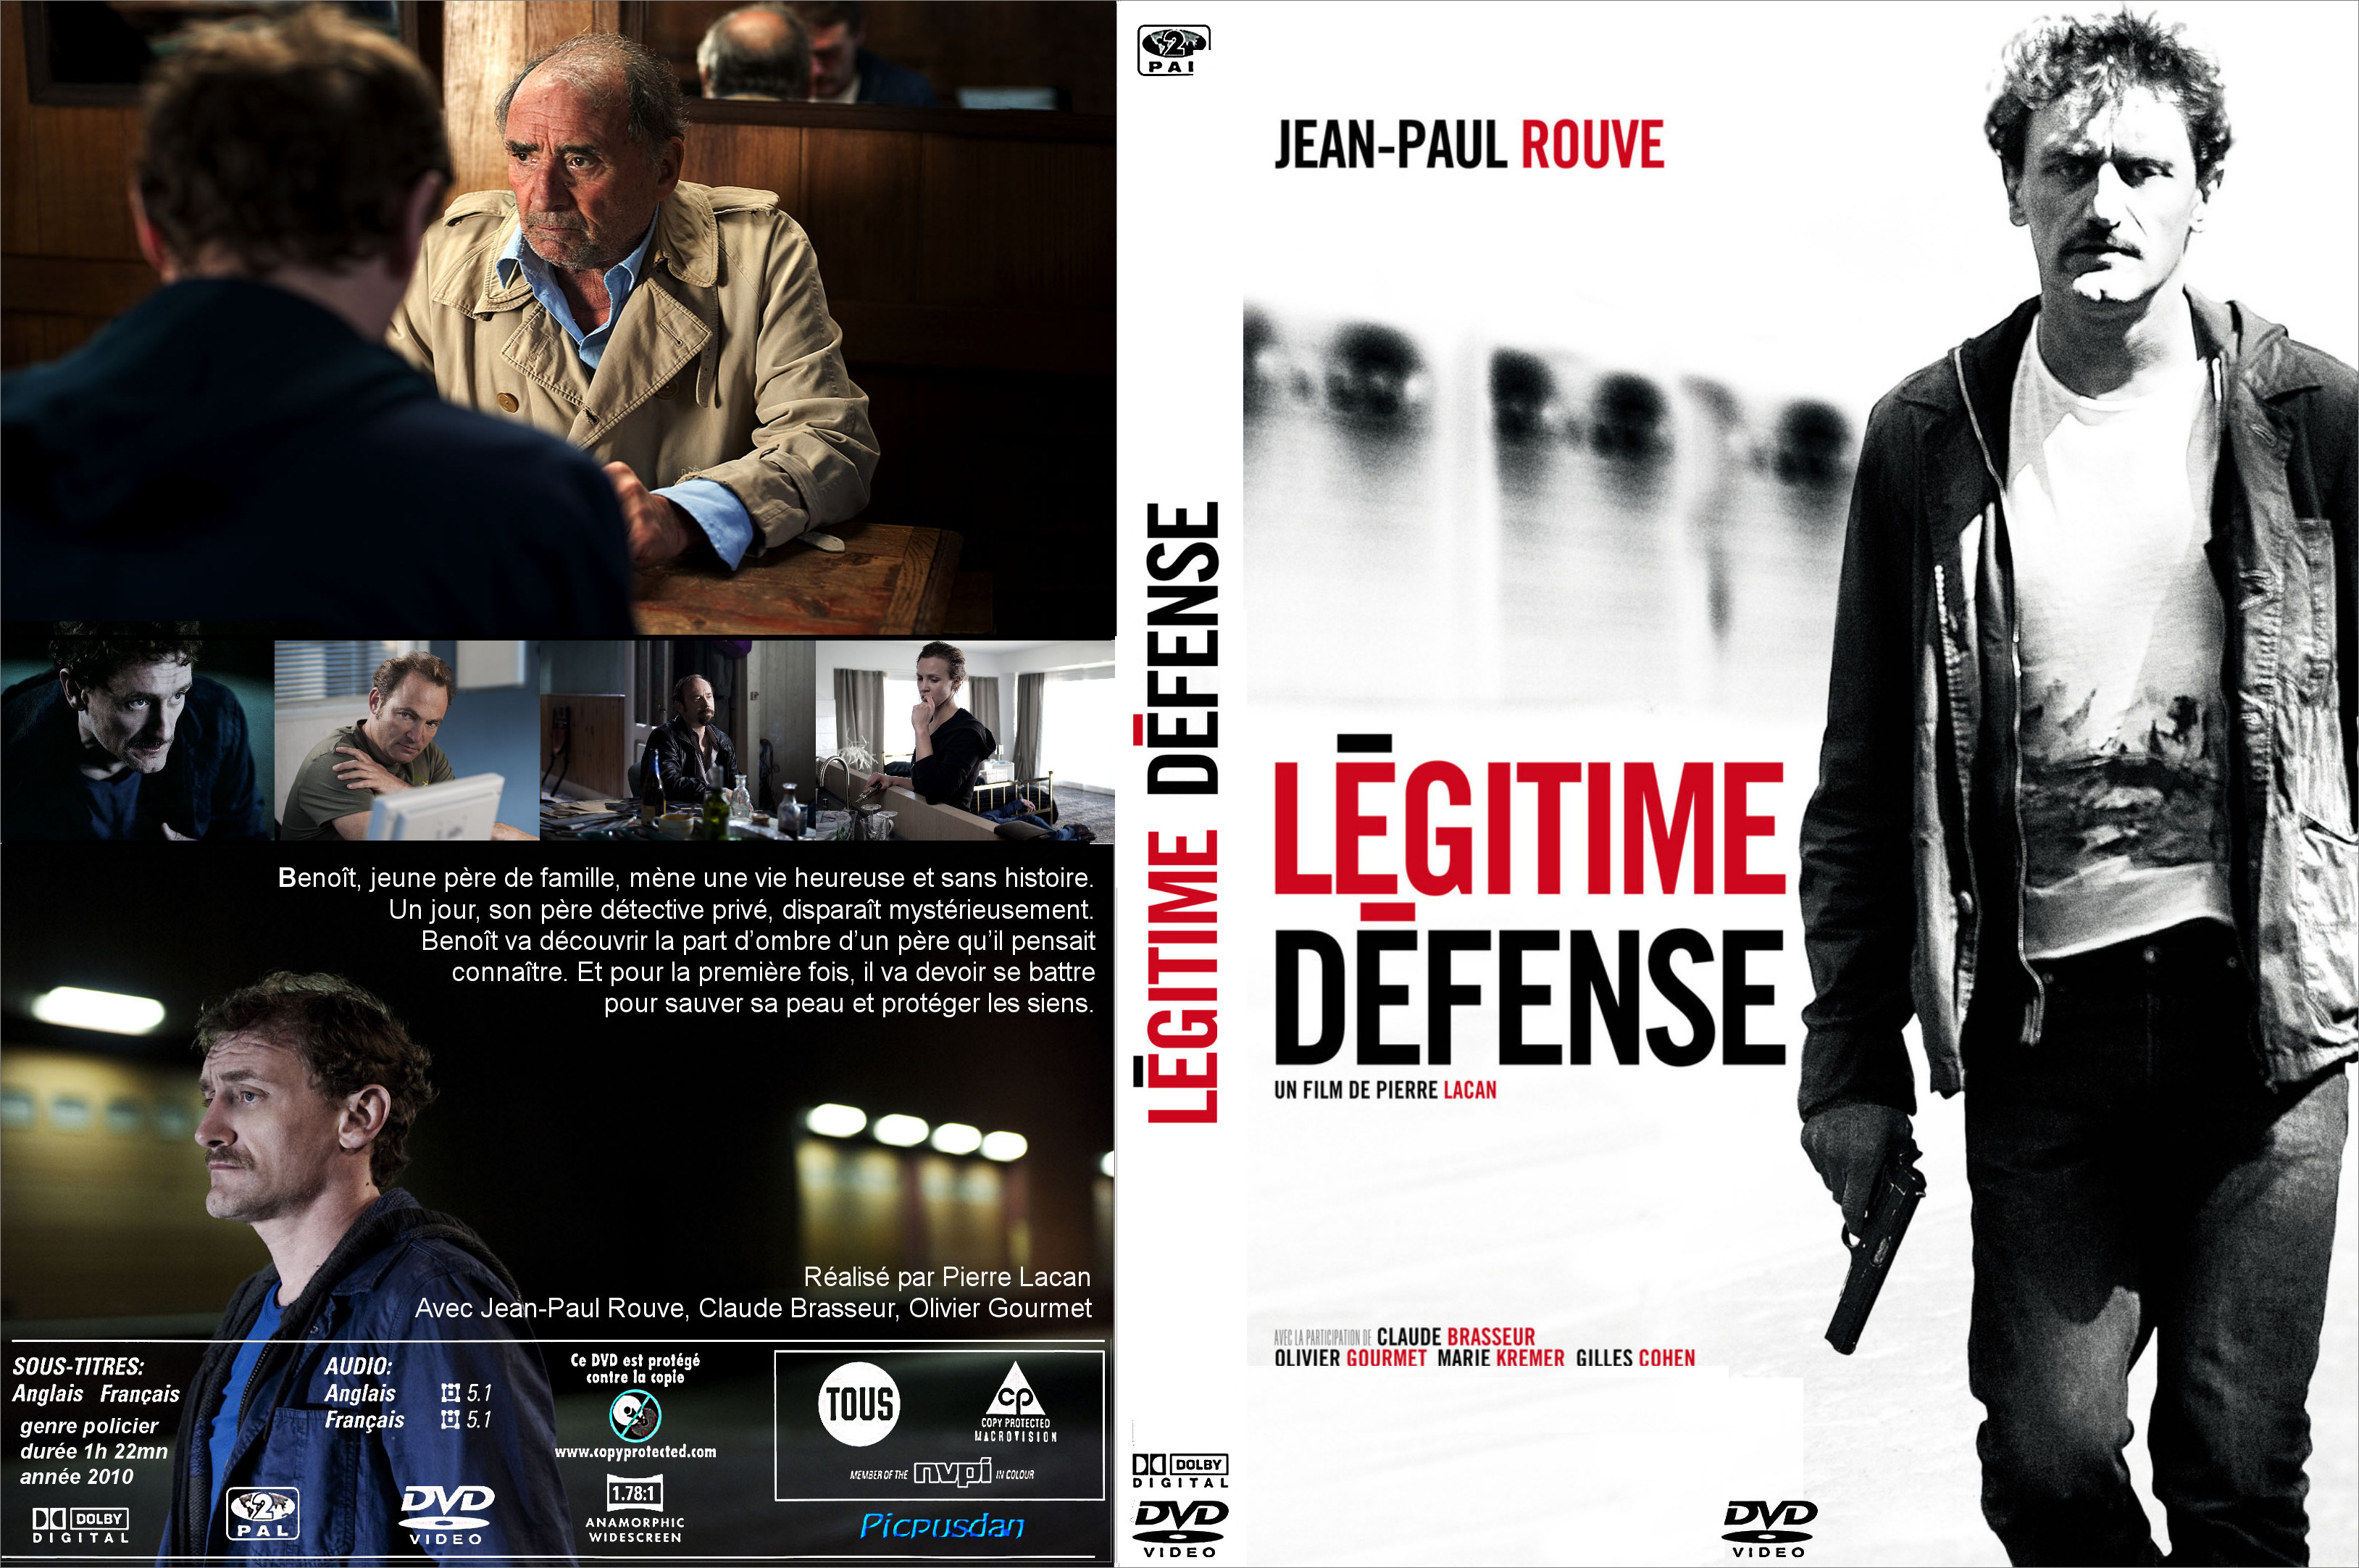 Jaquette DVD Lgitime defense (2010) custom